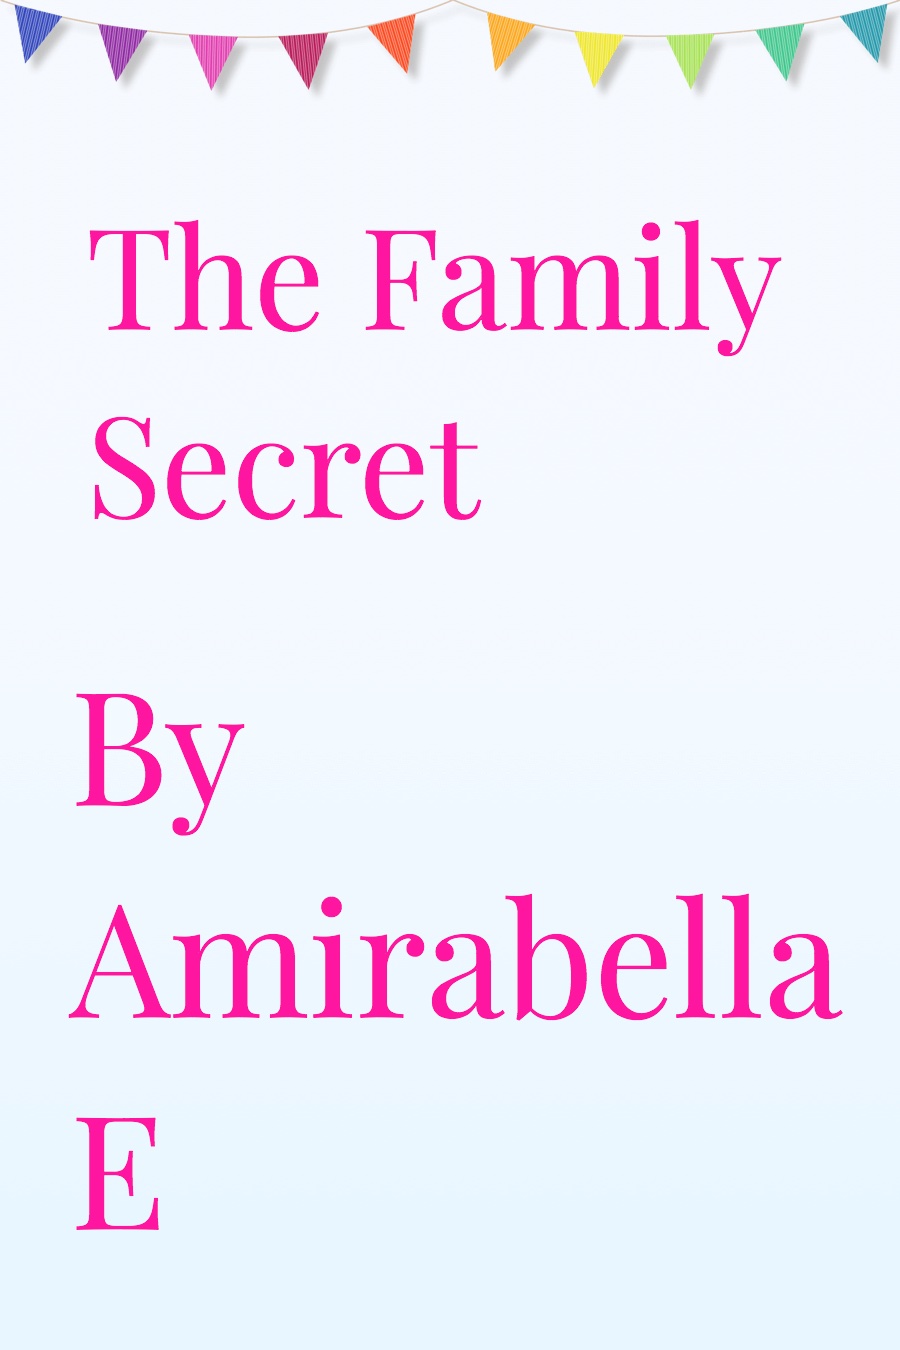 The Family Secret by Amirabella E